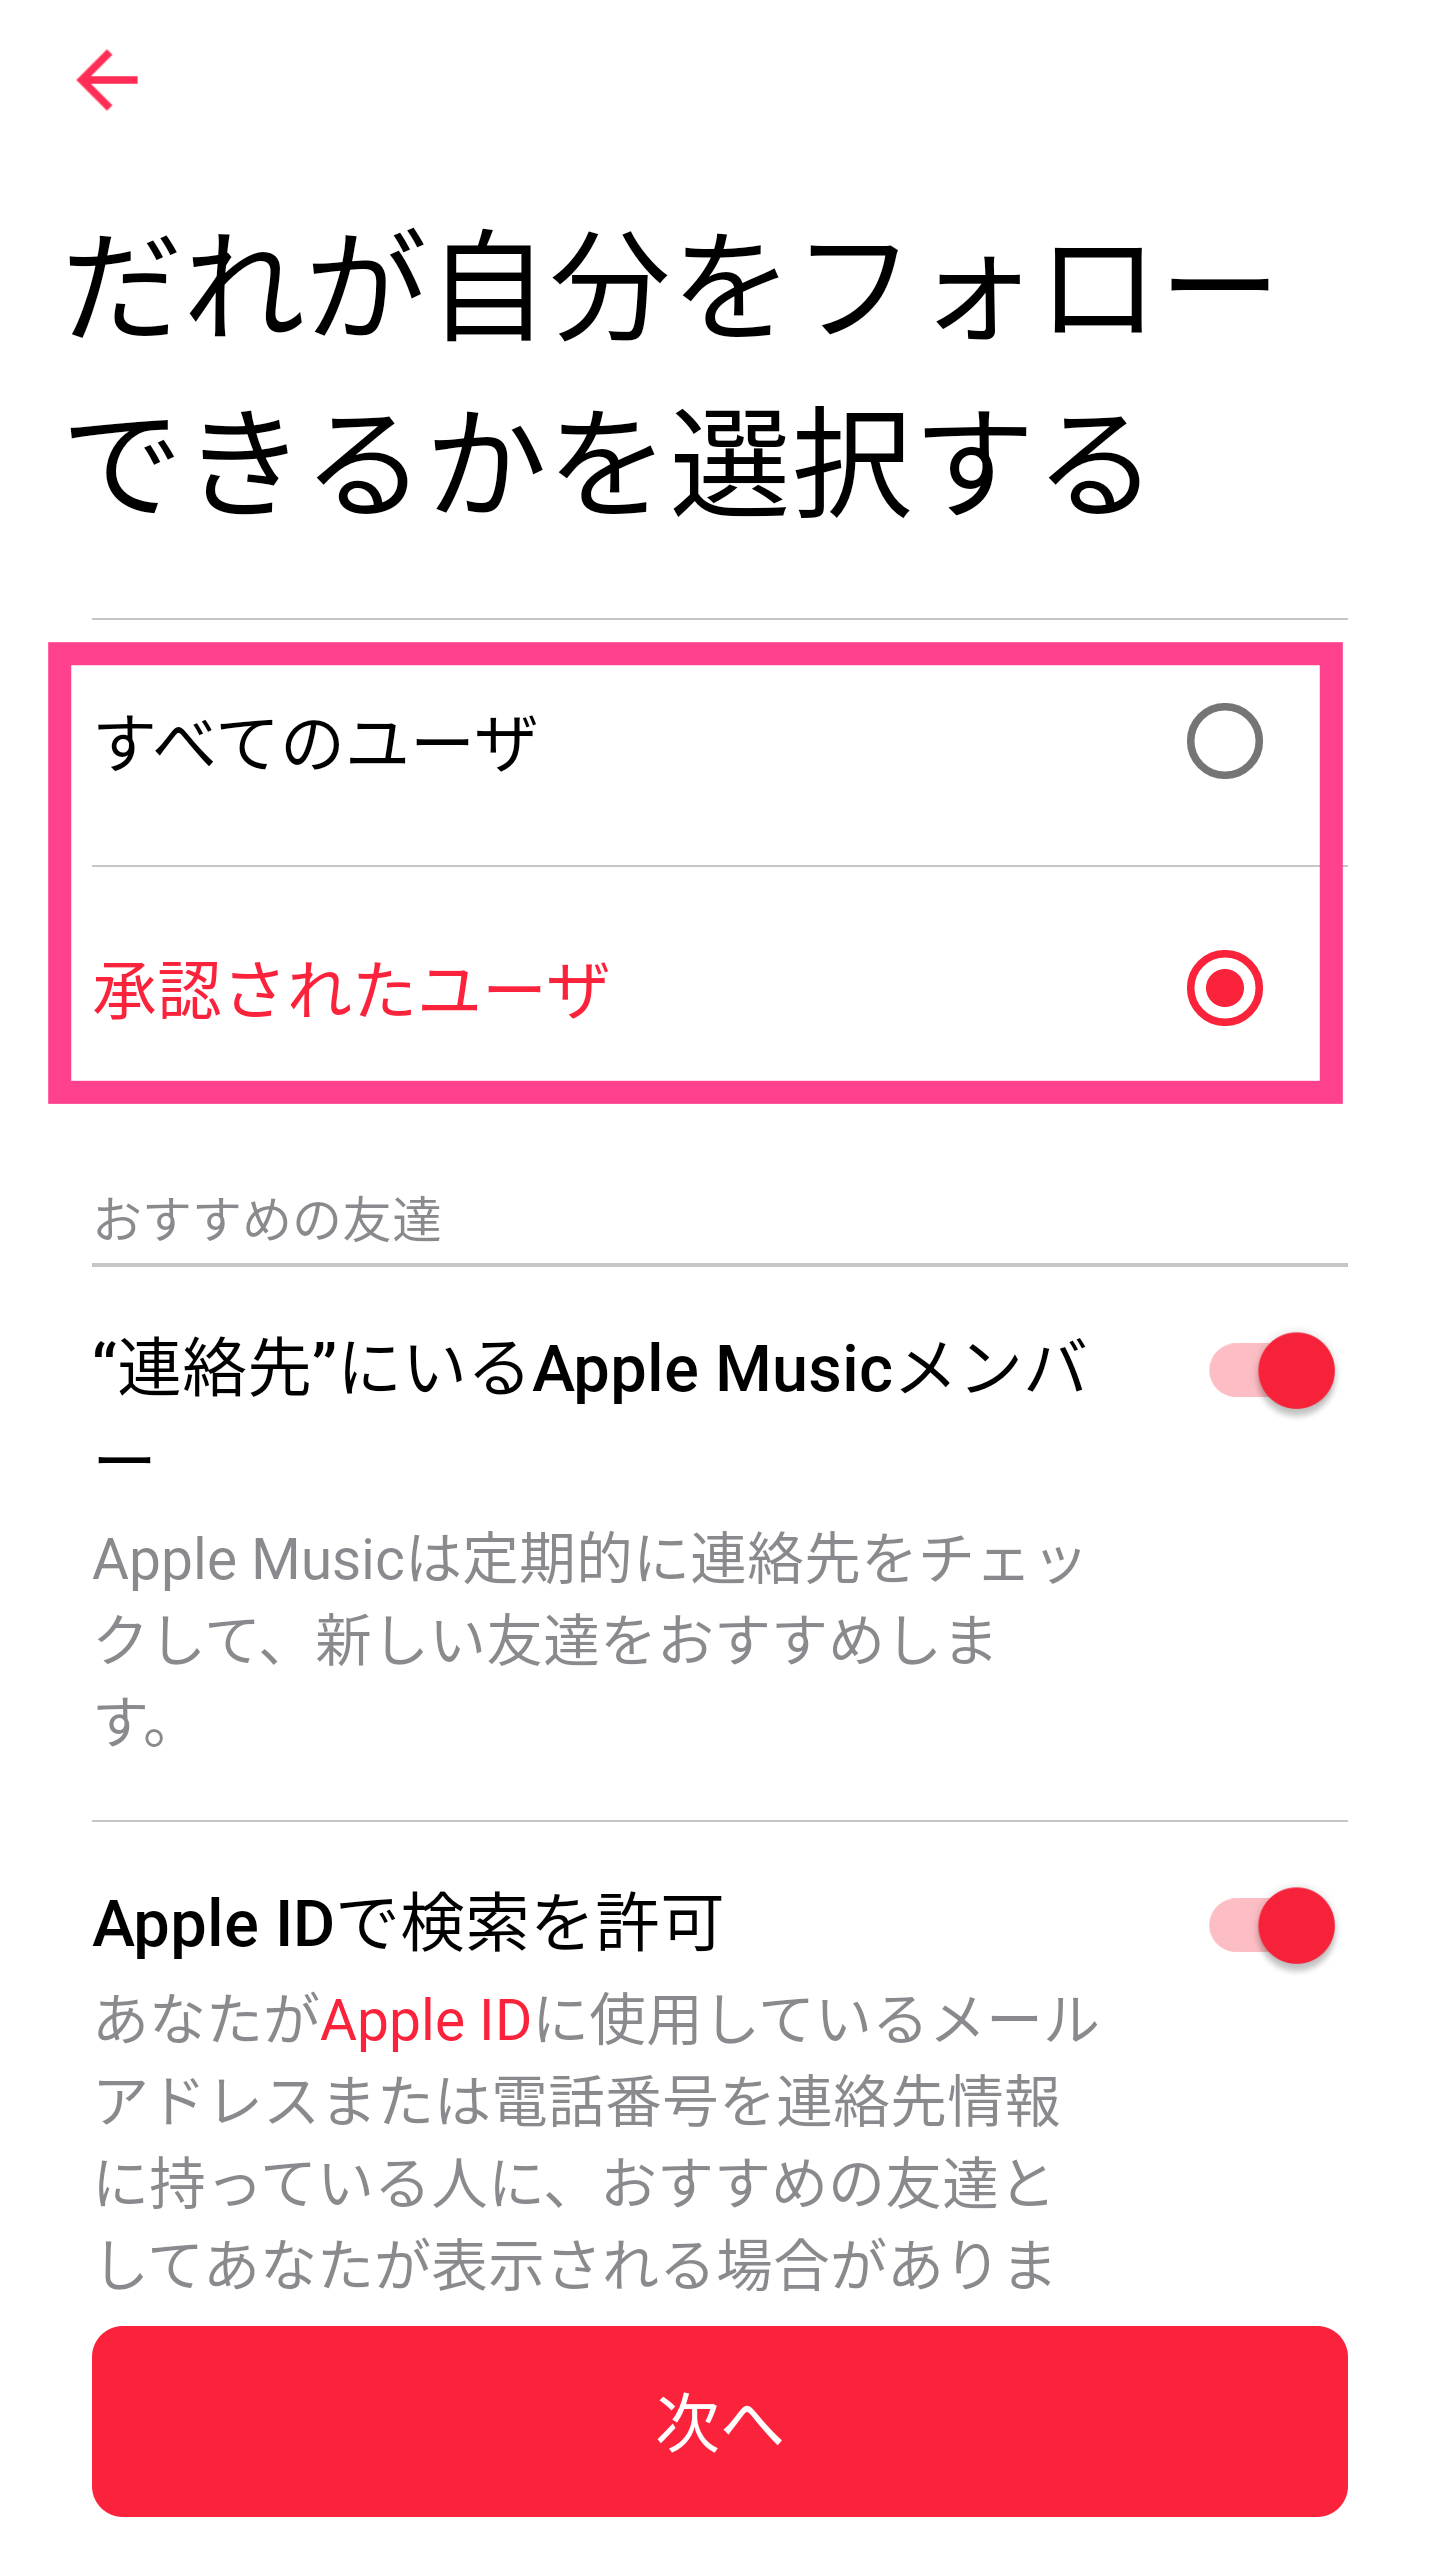 AppleMusic-AppleMusic-フォロー条件